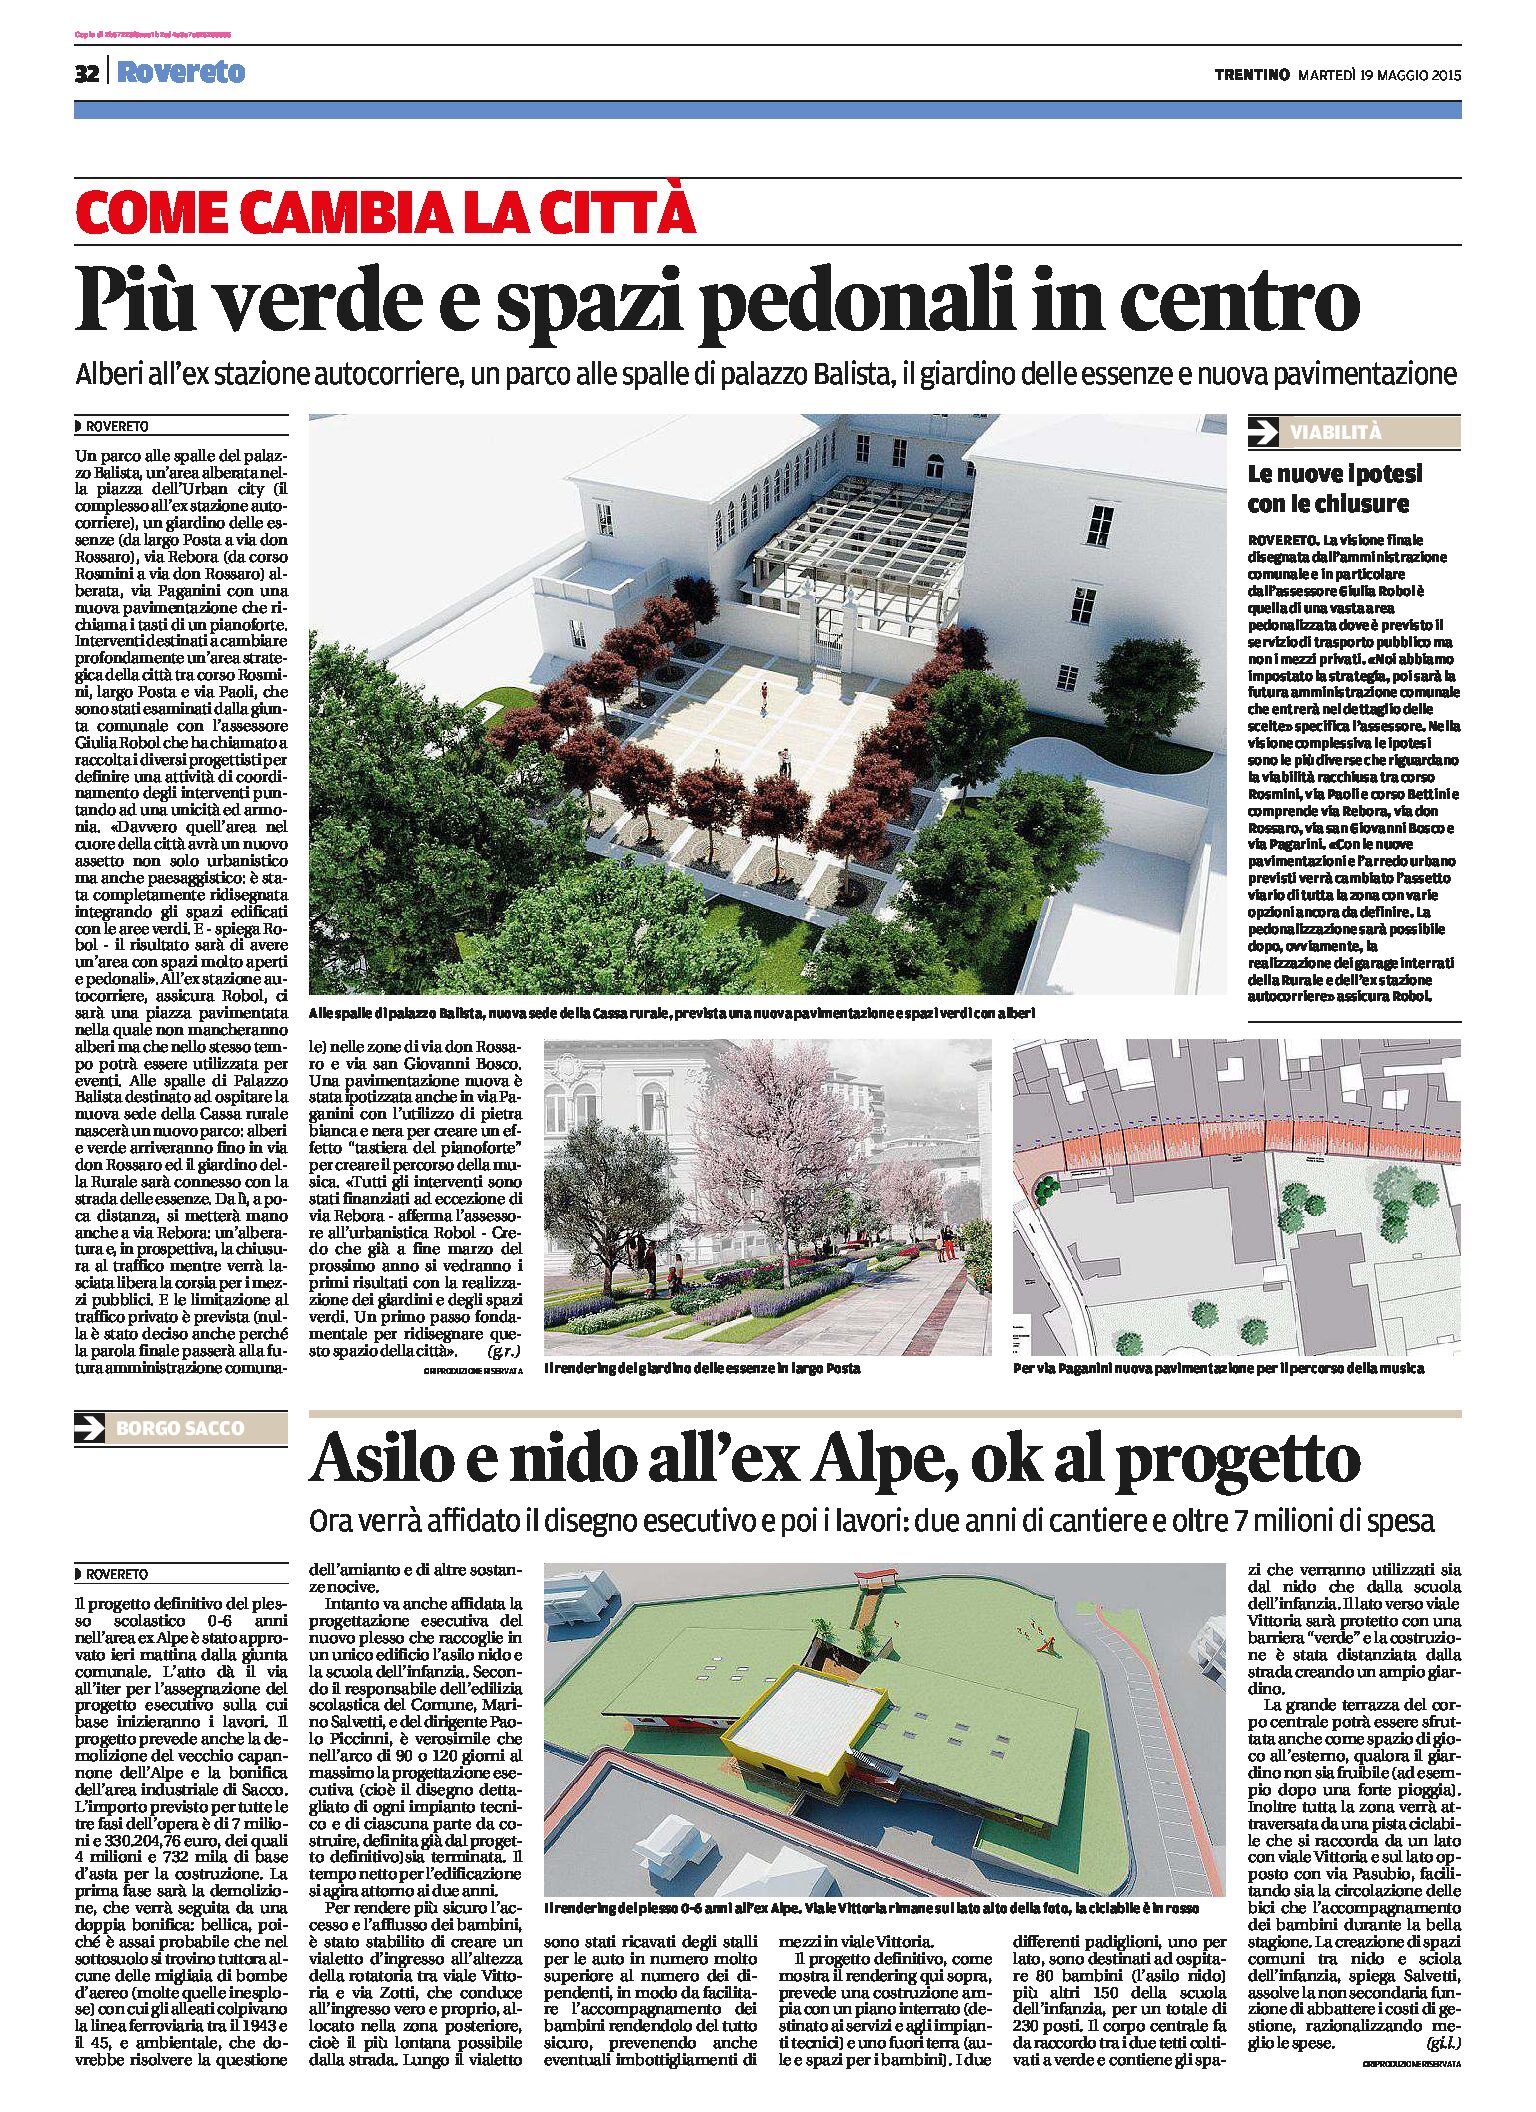 Urbanistica: nuovi progetti a Rovereto centro e Borgo Sacco